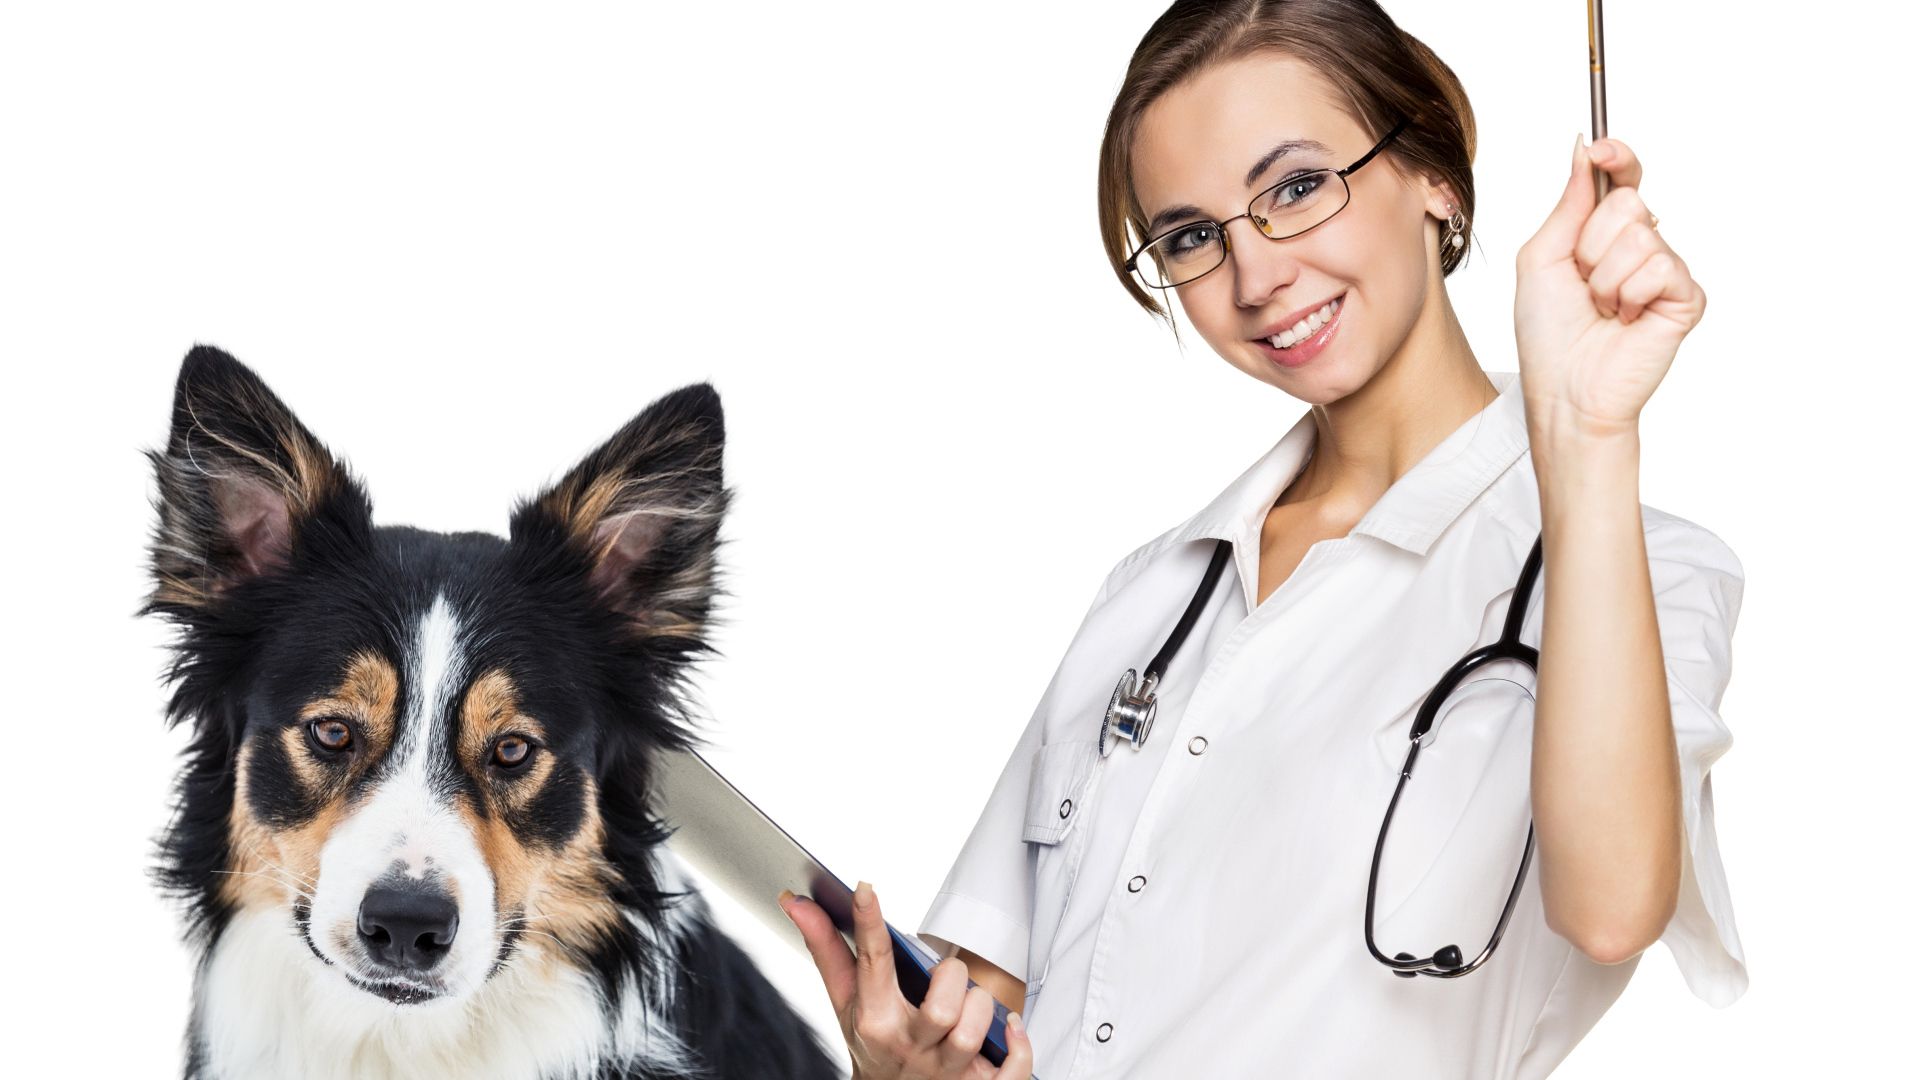 Girl doctor vet with dog border collie on white background Desktop wallpaper 1920x1080